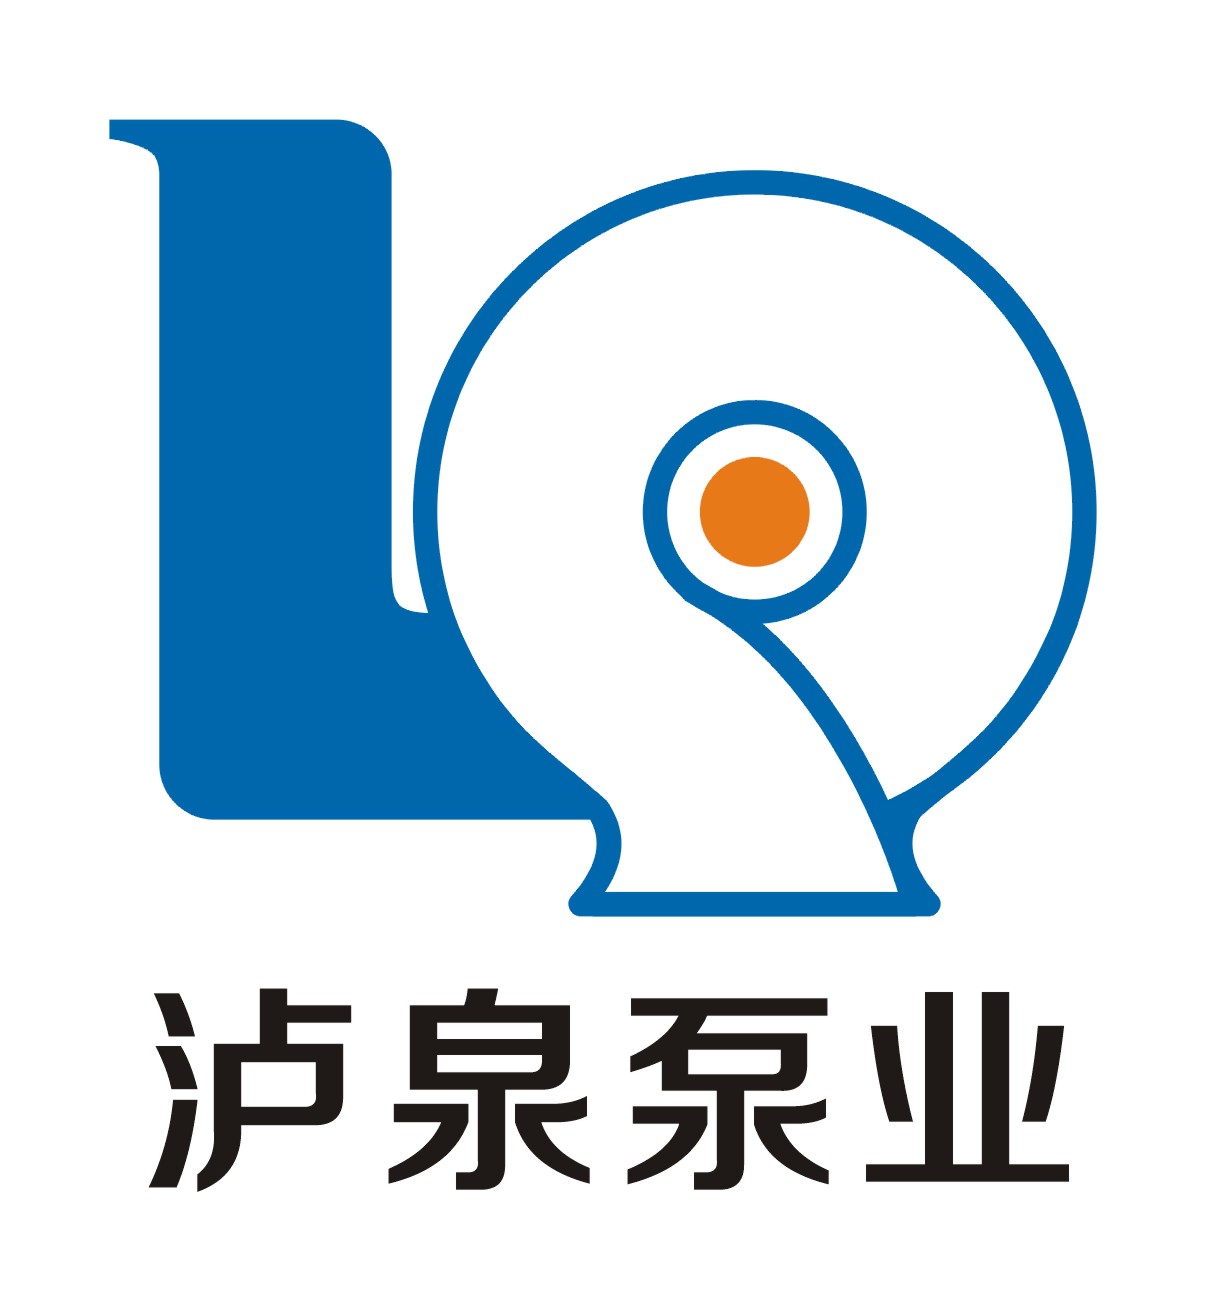 上海泸泉泵业有限公司